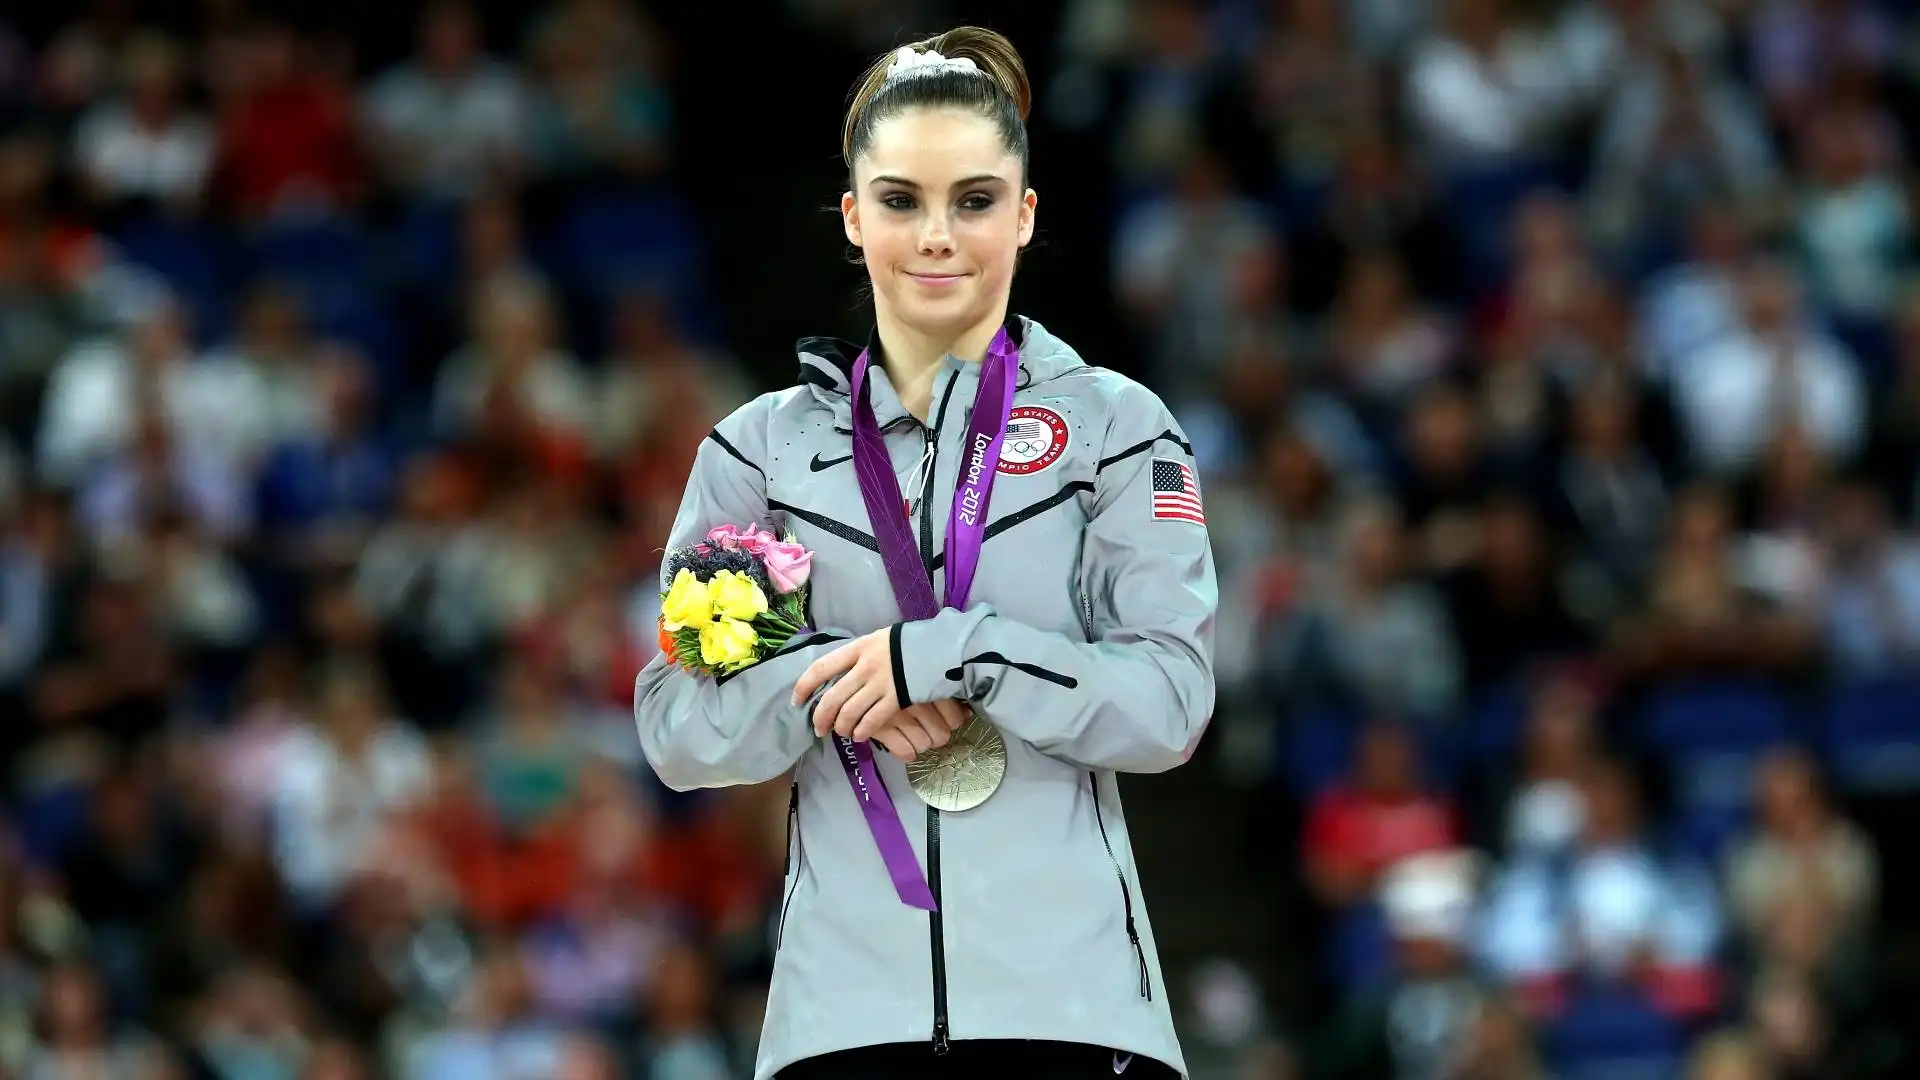 Individualmente, invece, conquista l'argento nella finale di volteggio delle Olimpiadi di Londra 2012